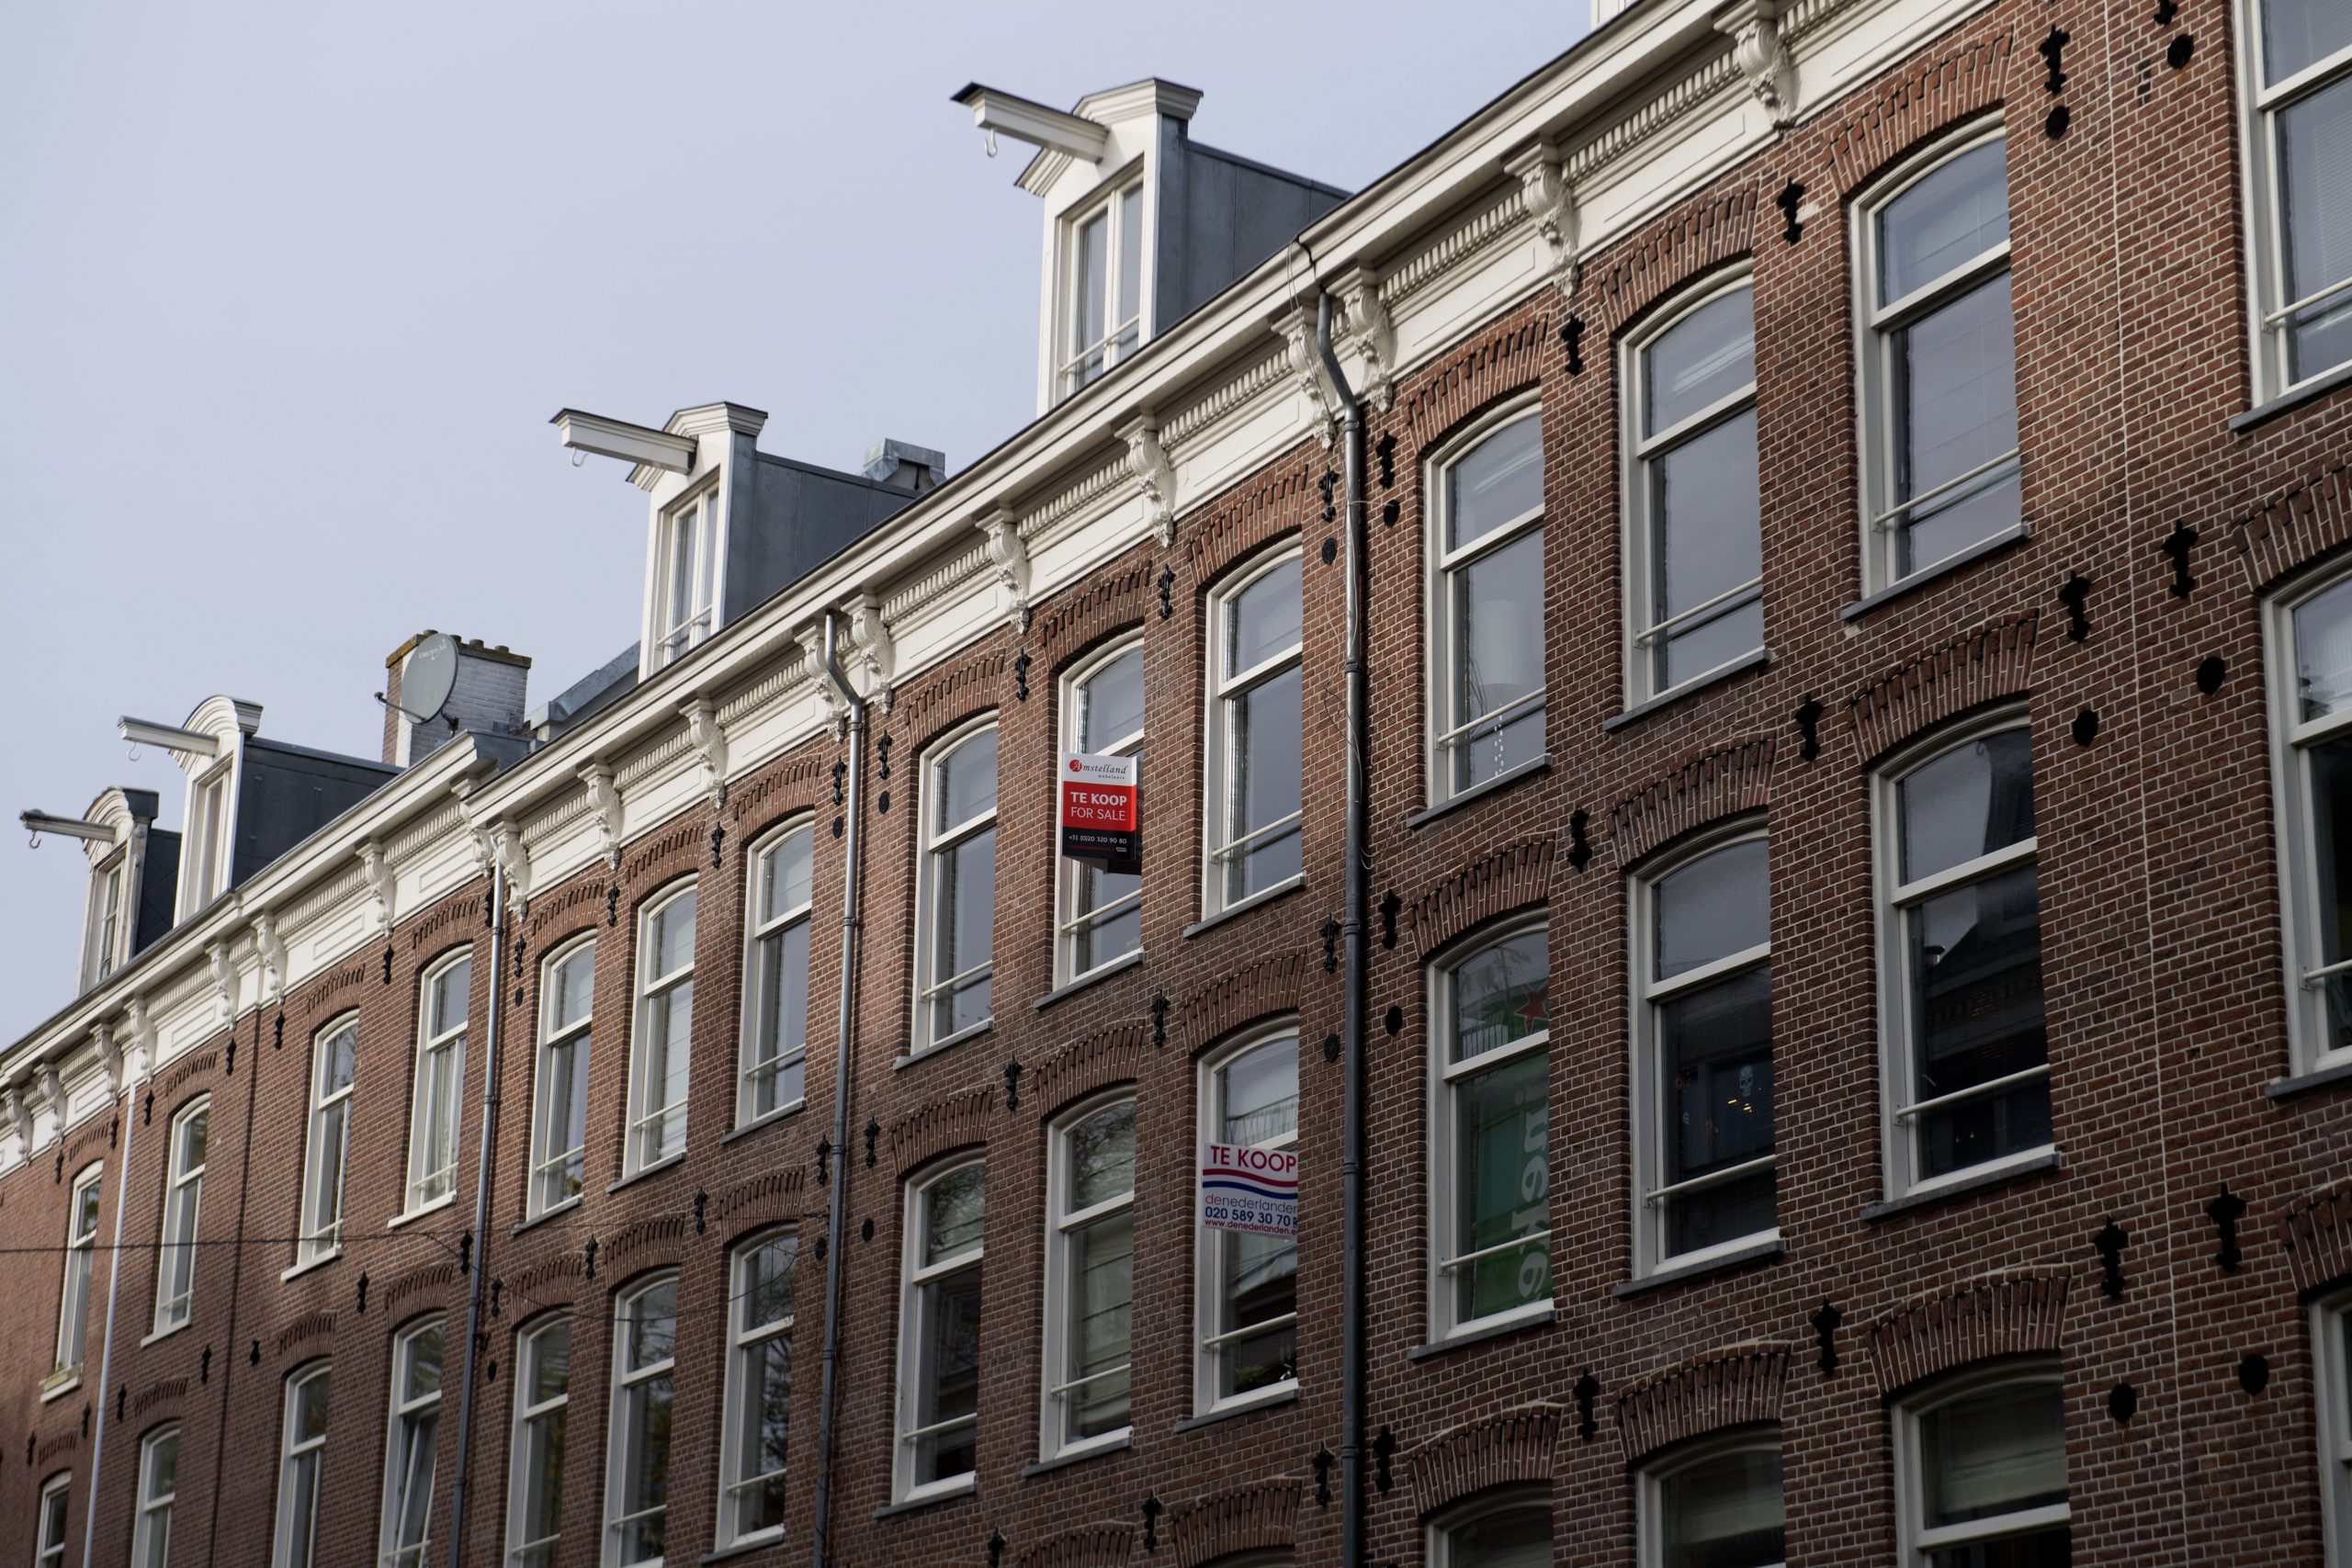 Woningen in Amsterdam